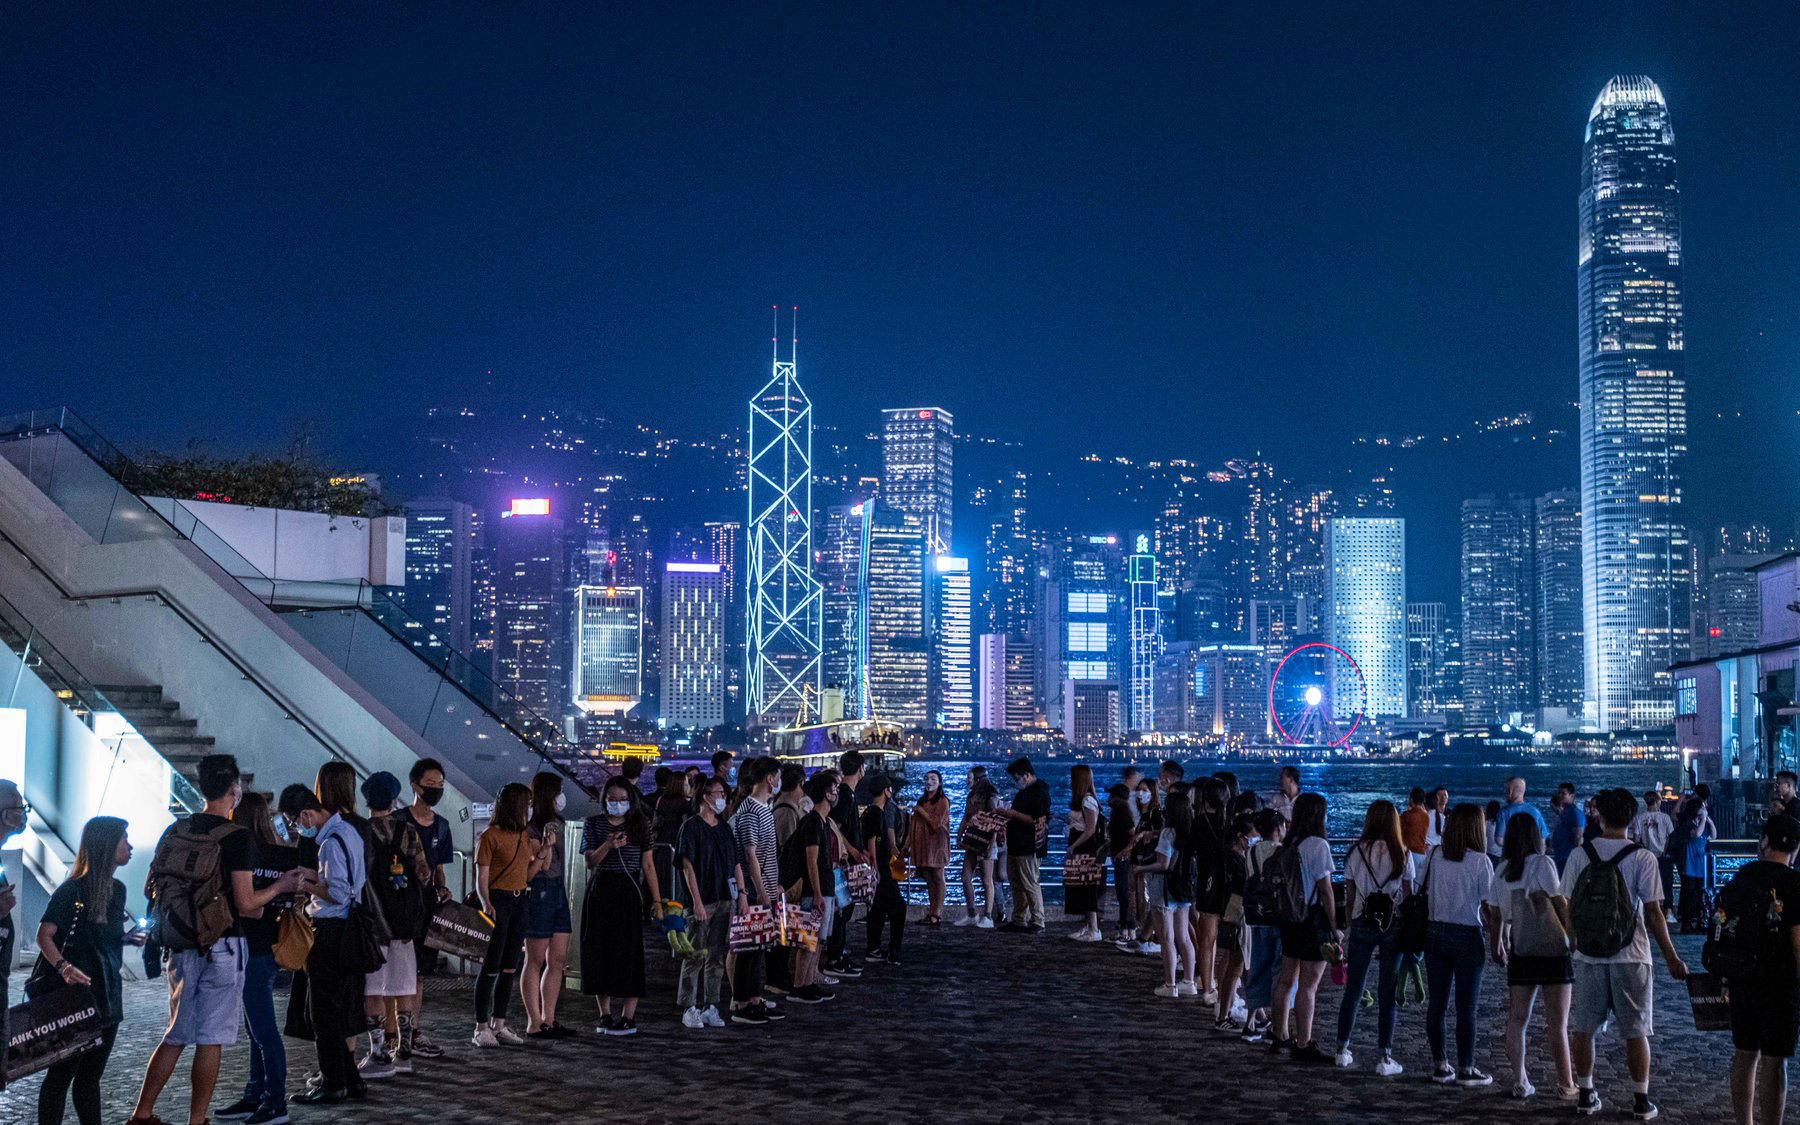 Hồng Kông trước nguy cơ mất đi cơ chế đãi ngộ đặc biệt: "Quả bom nguyên tử" sẽ gây thiệt hại kinh tế cho tất cả các bên?